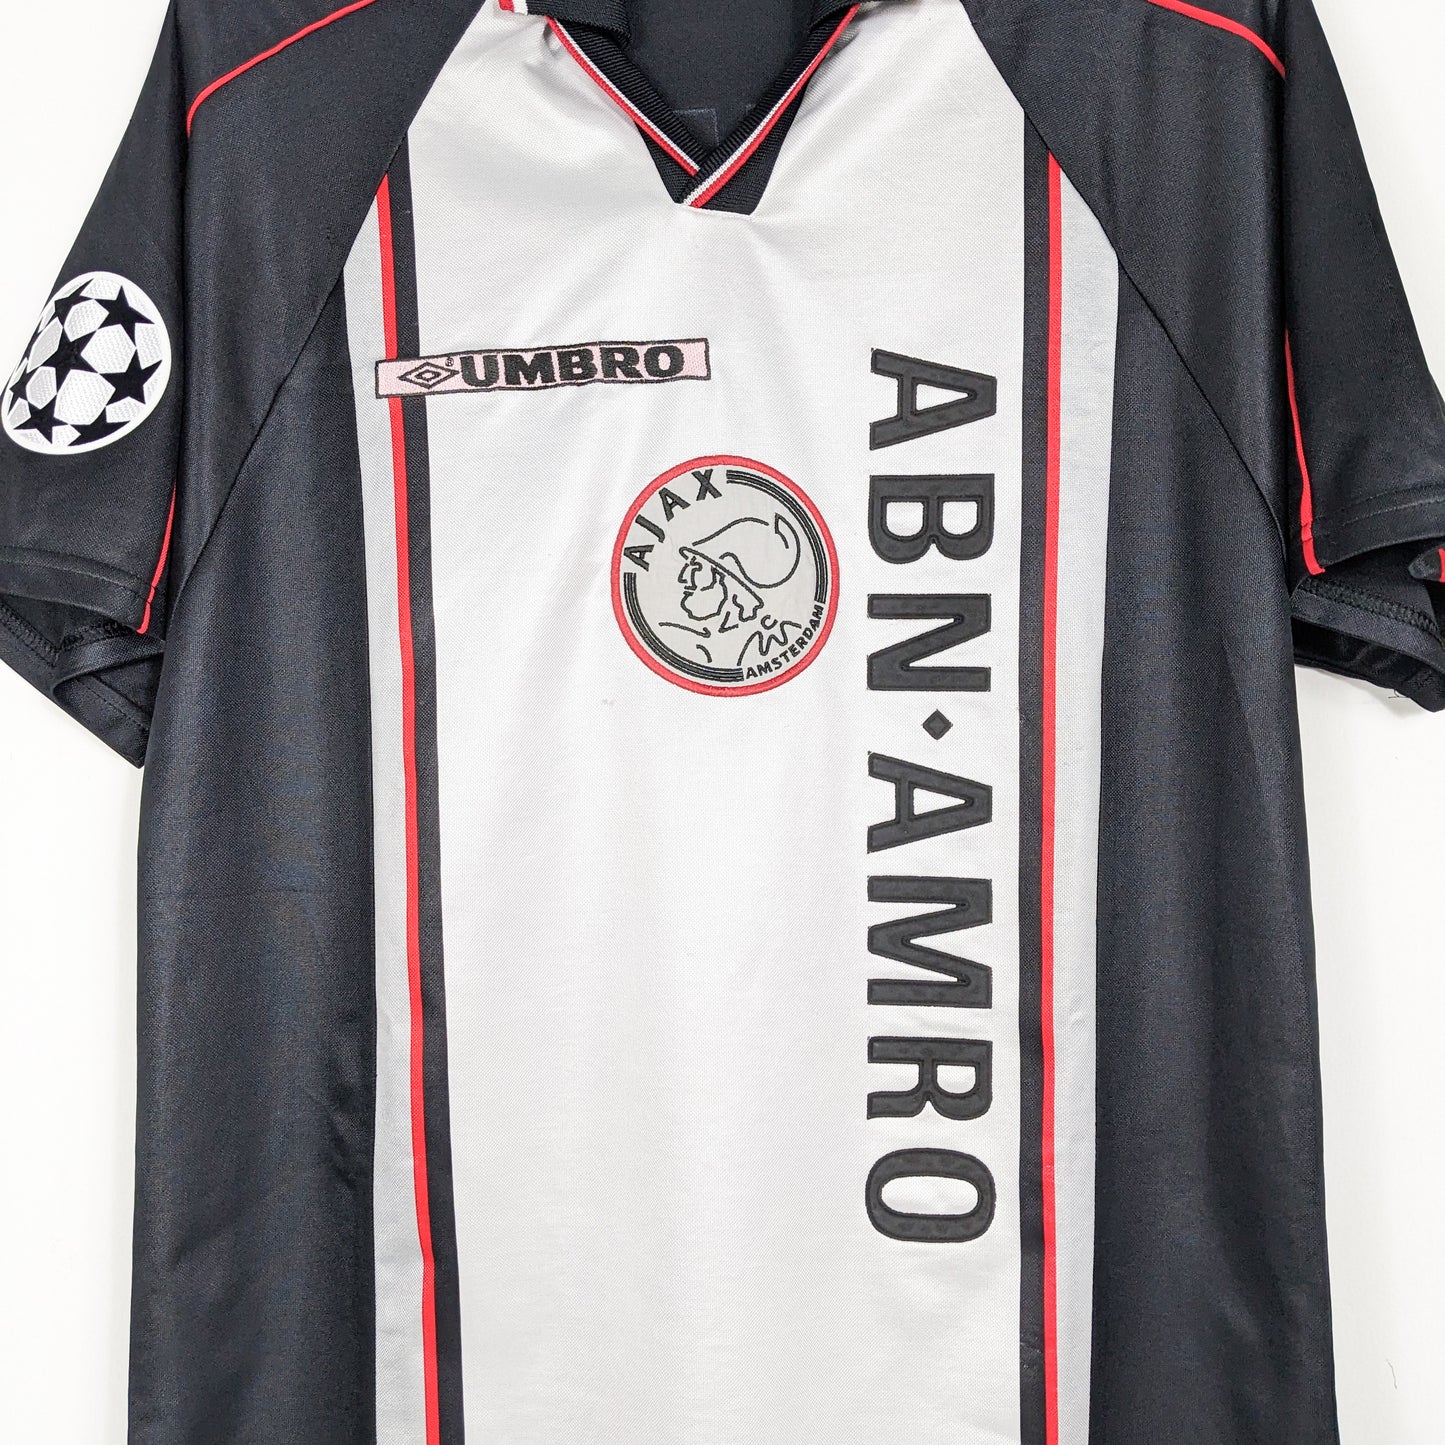 Authentic Ajax 1998/1999 Away - Litmanen #10 Size L